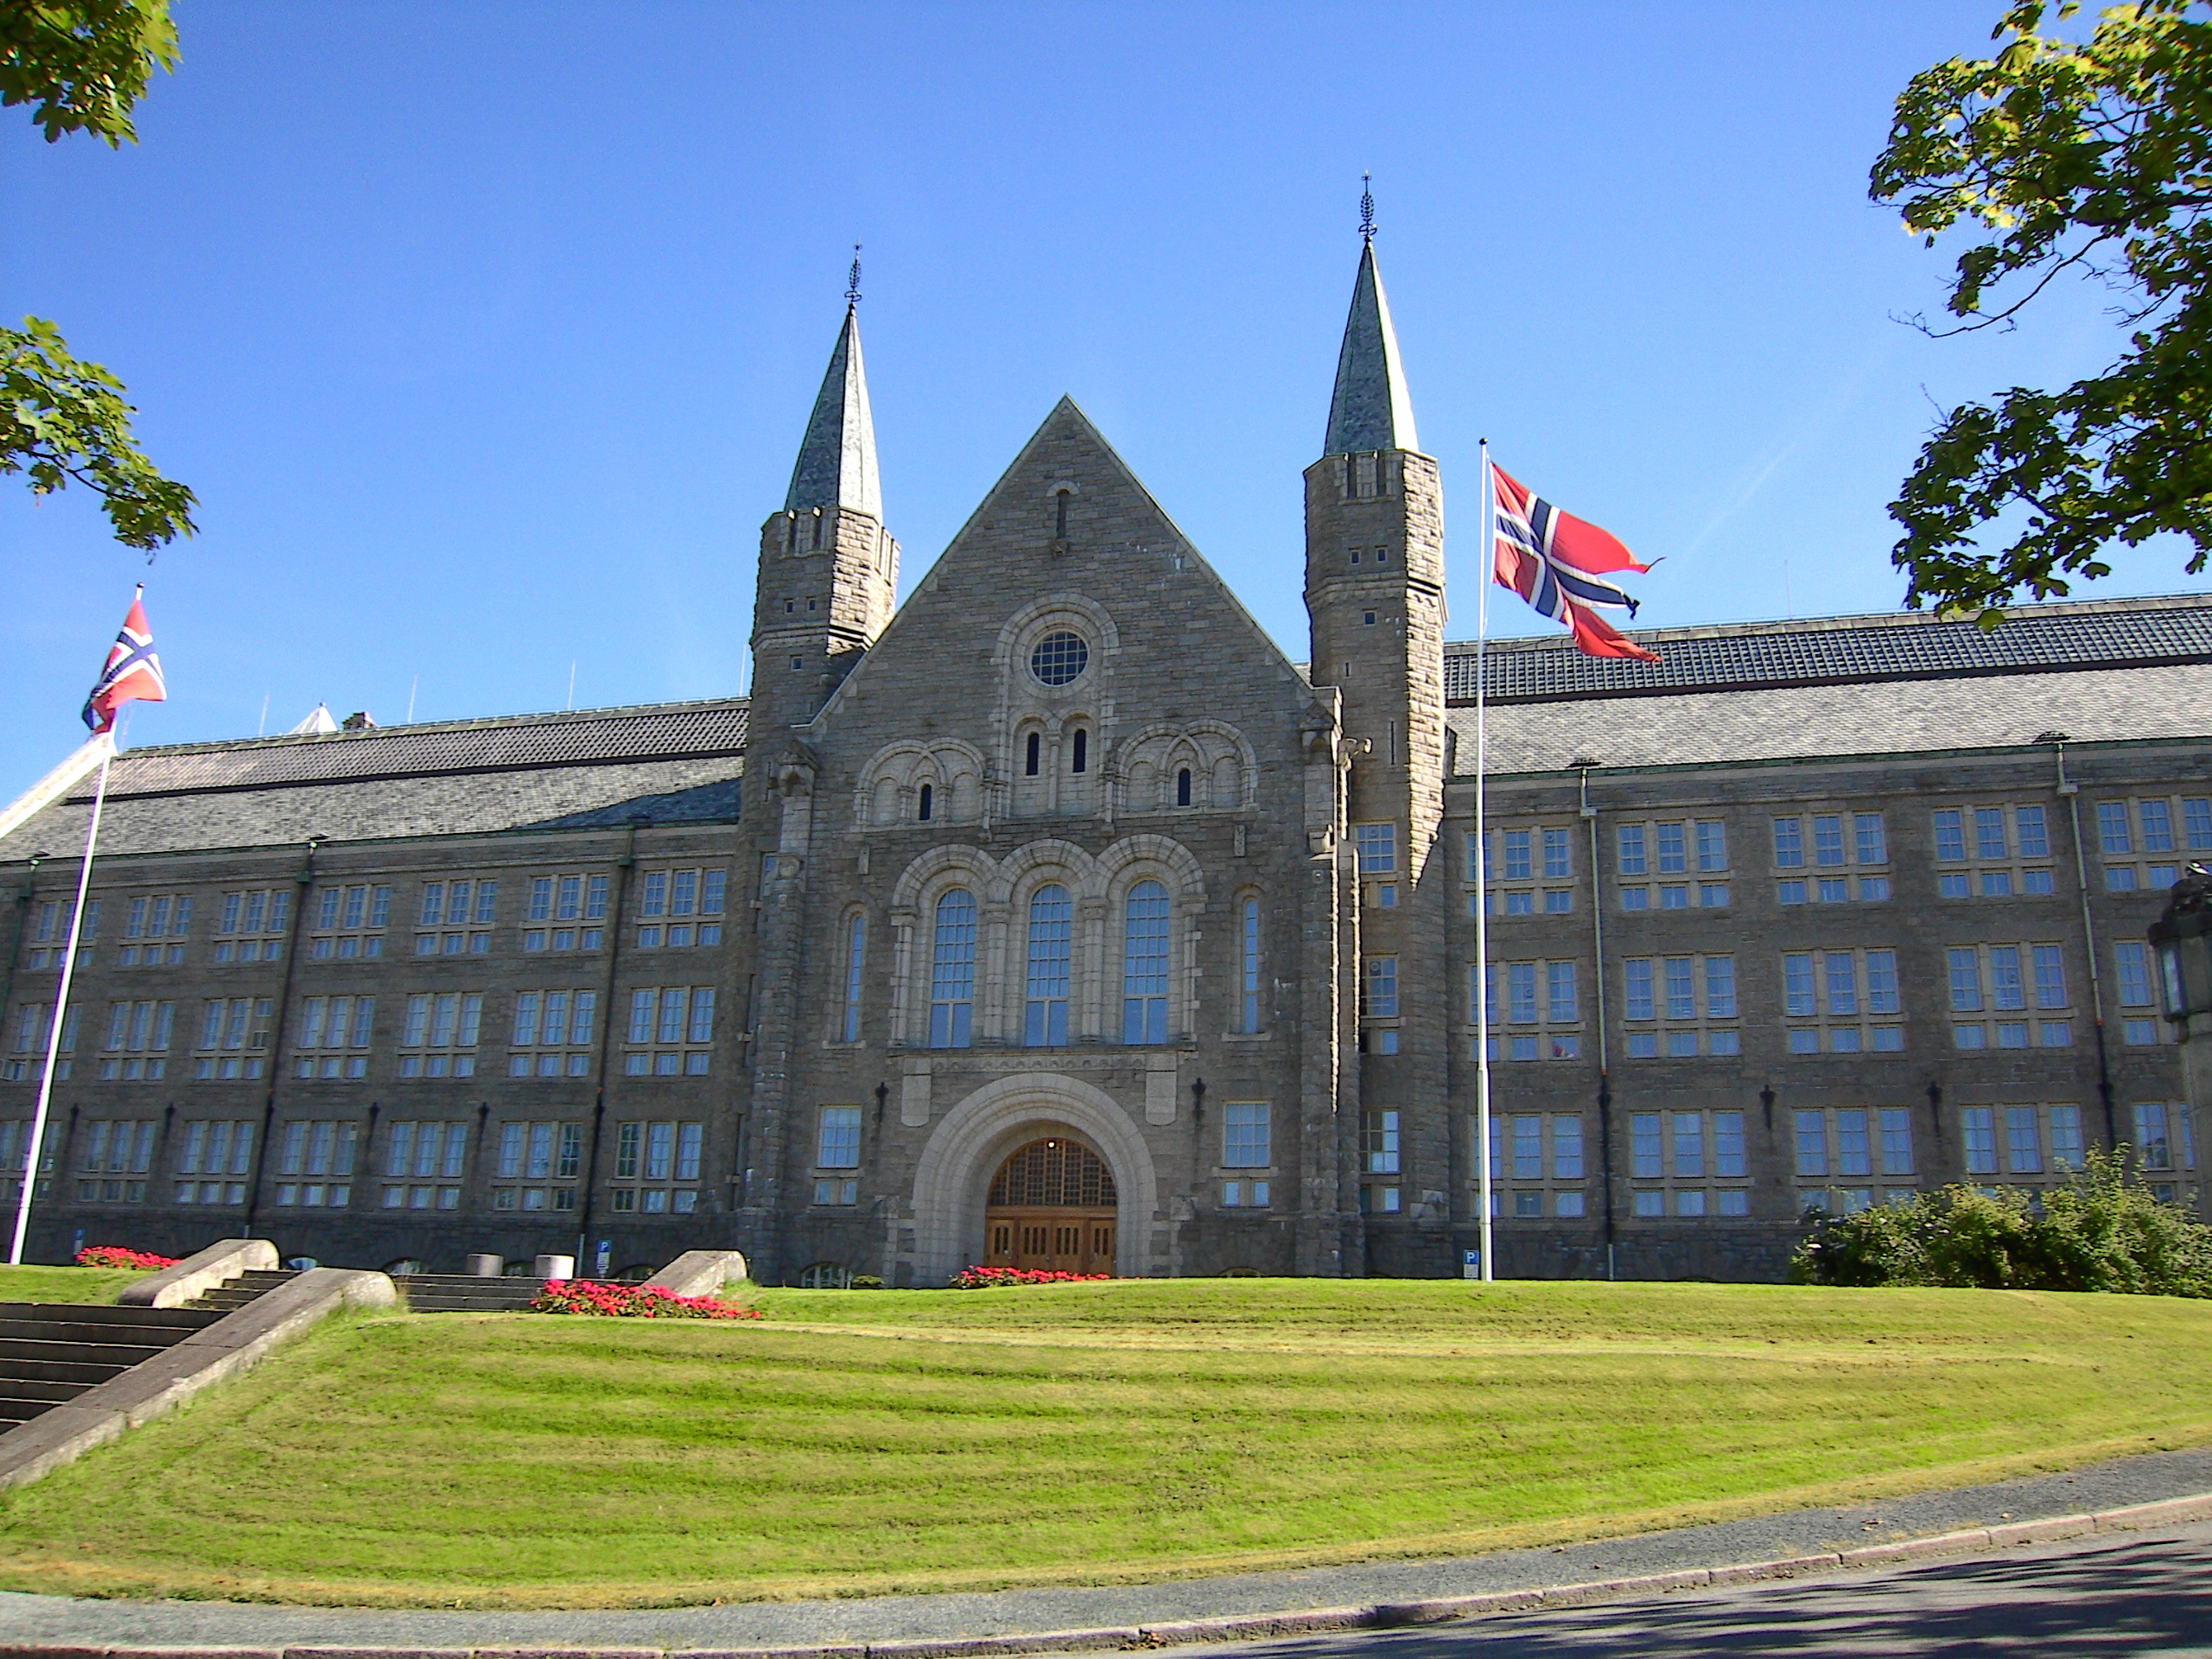 挪威科技大學